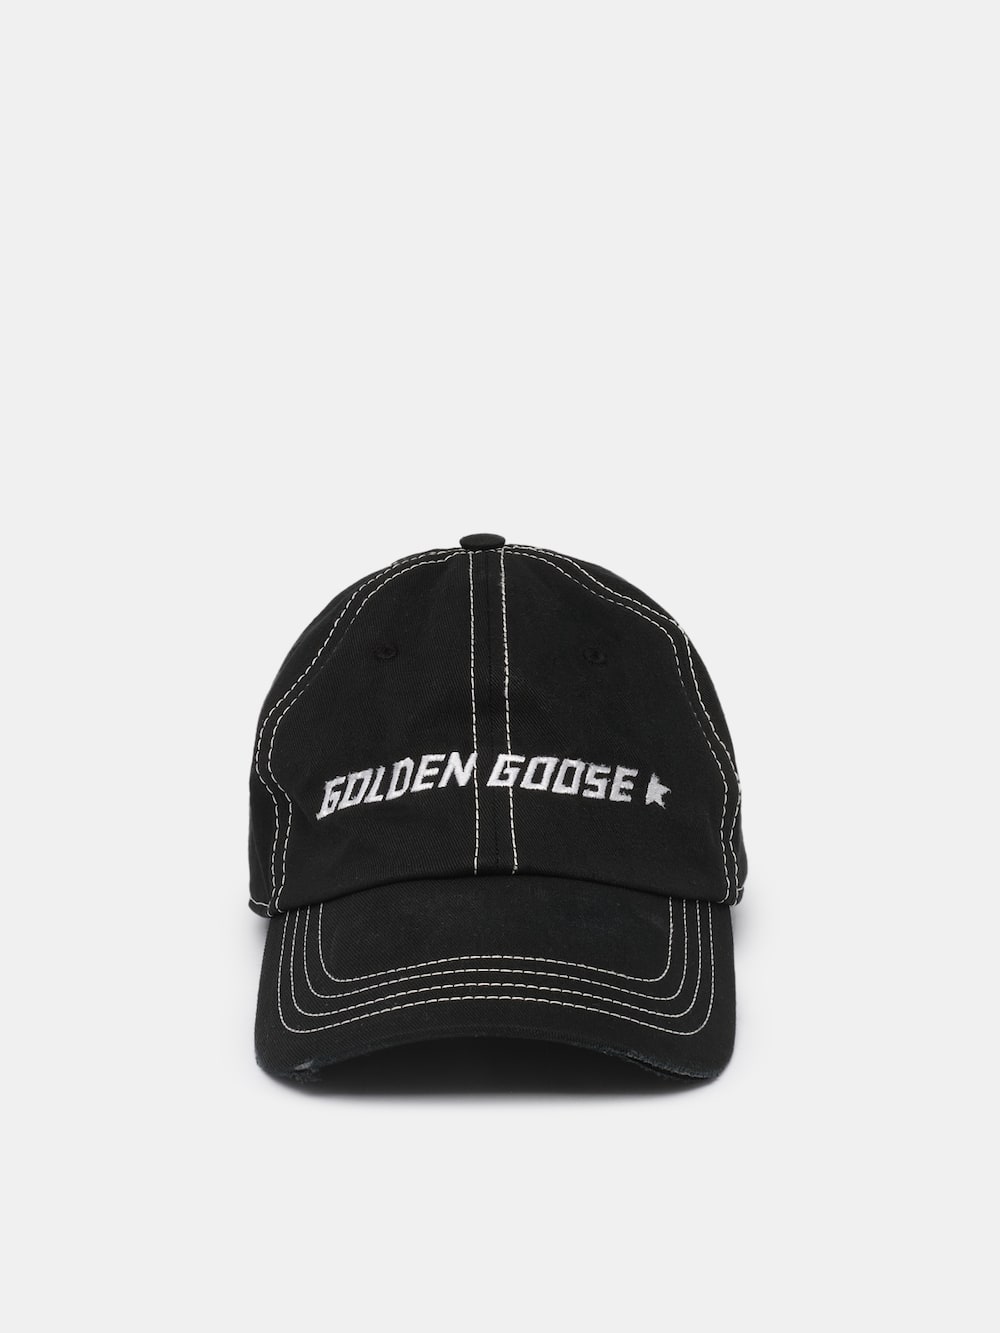 Golden Goose - Aden 컨트라스팅 로고 블랙 베이스볼 캡 in 